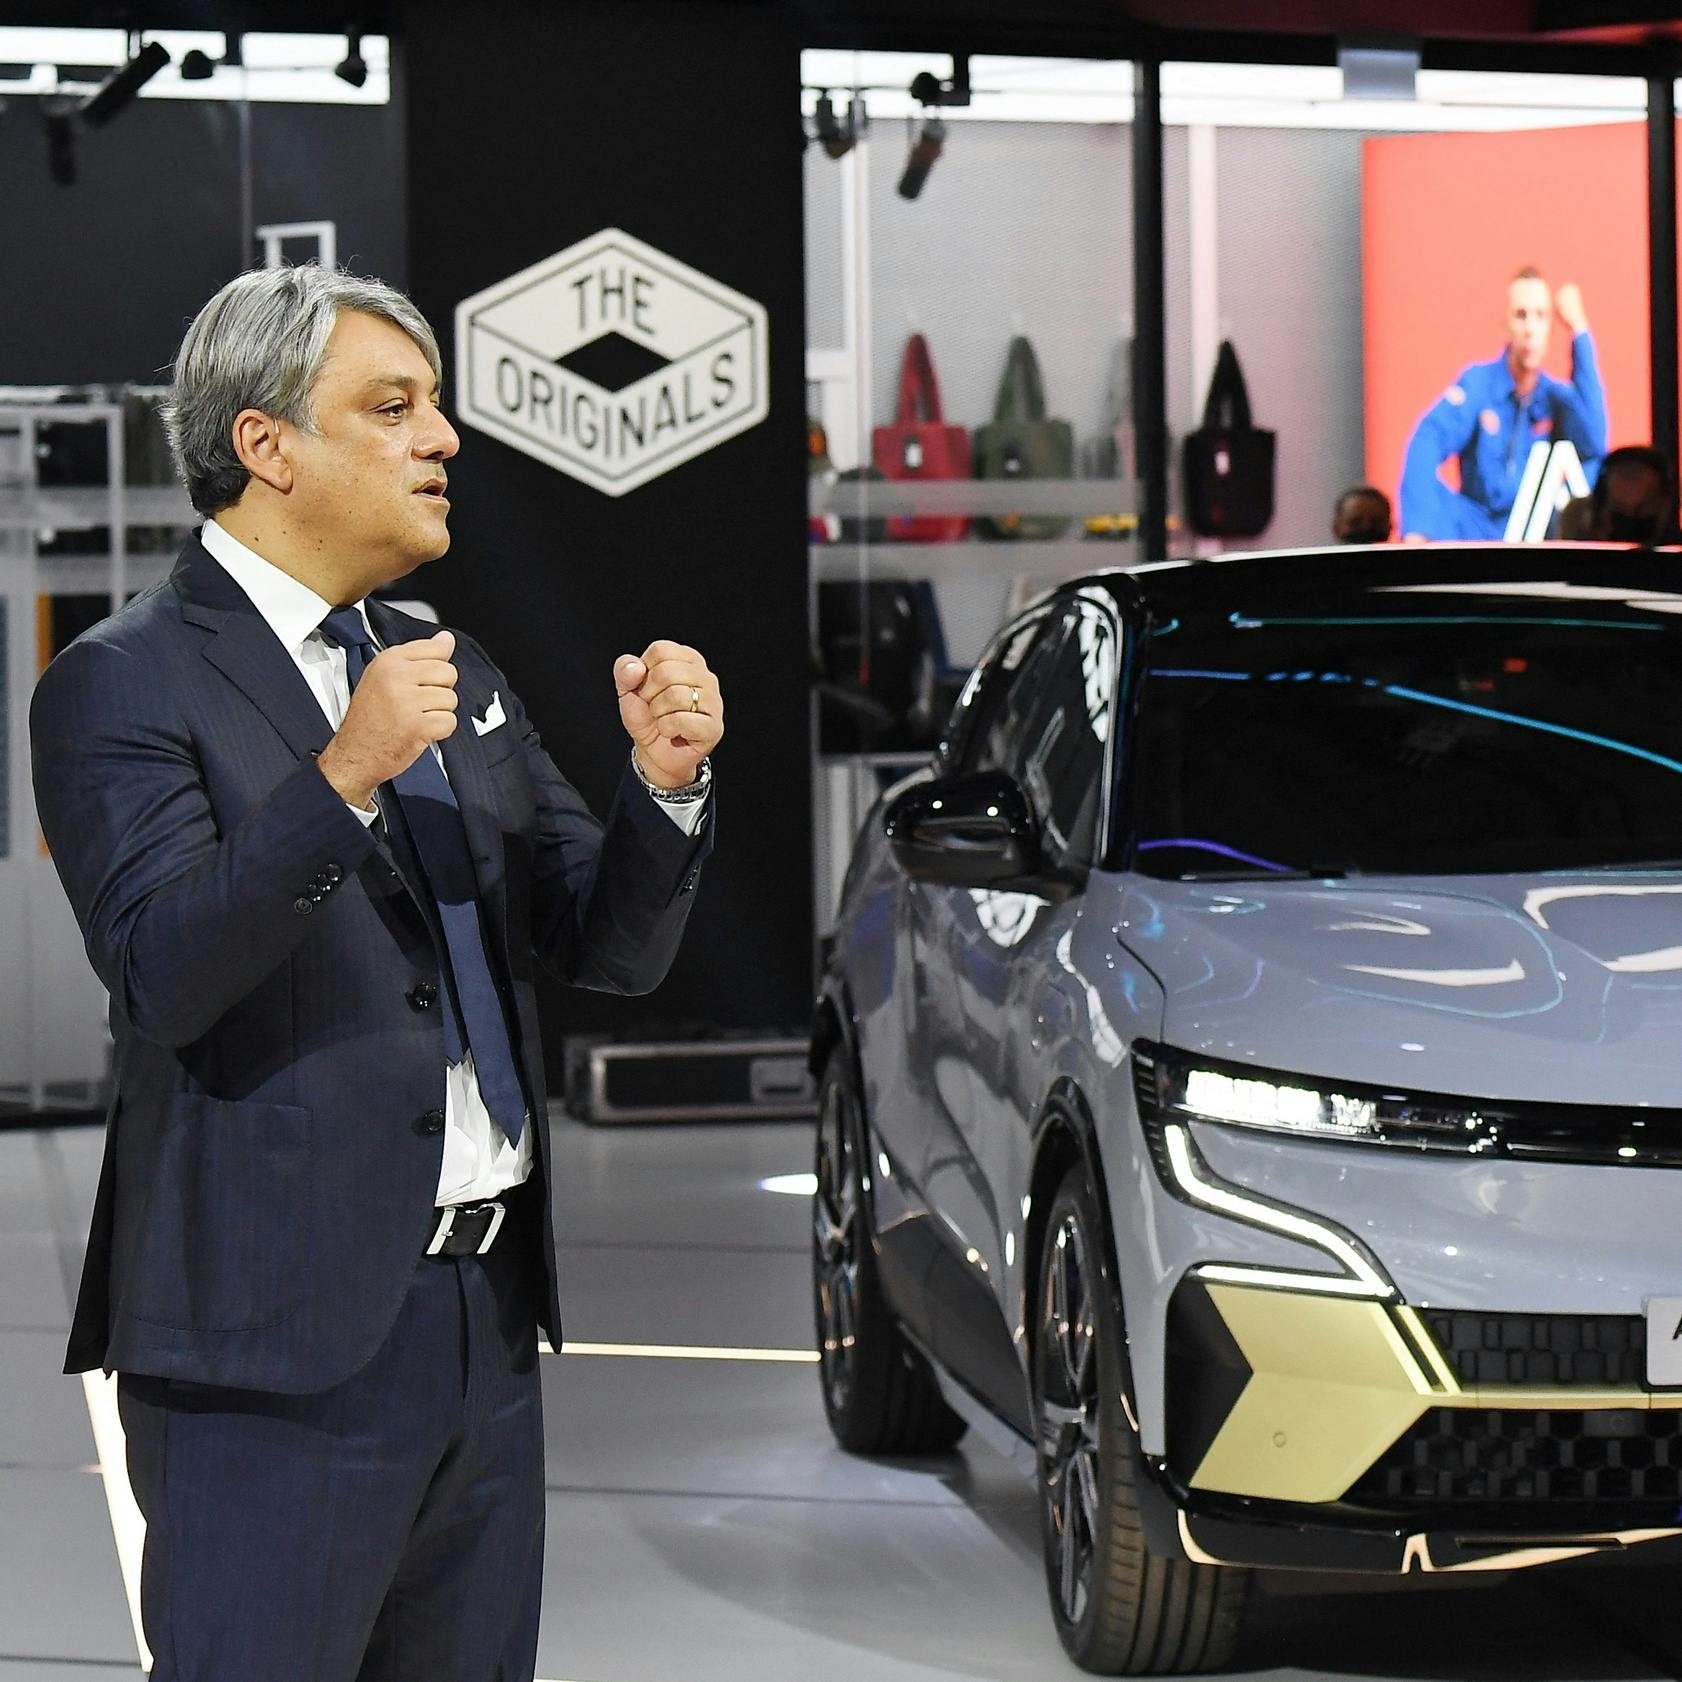 Renault ziet hogere winst door afsplitsing elektrische tak